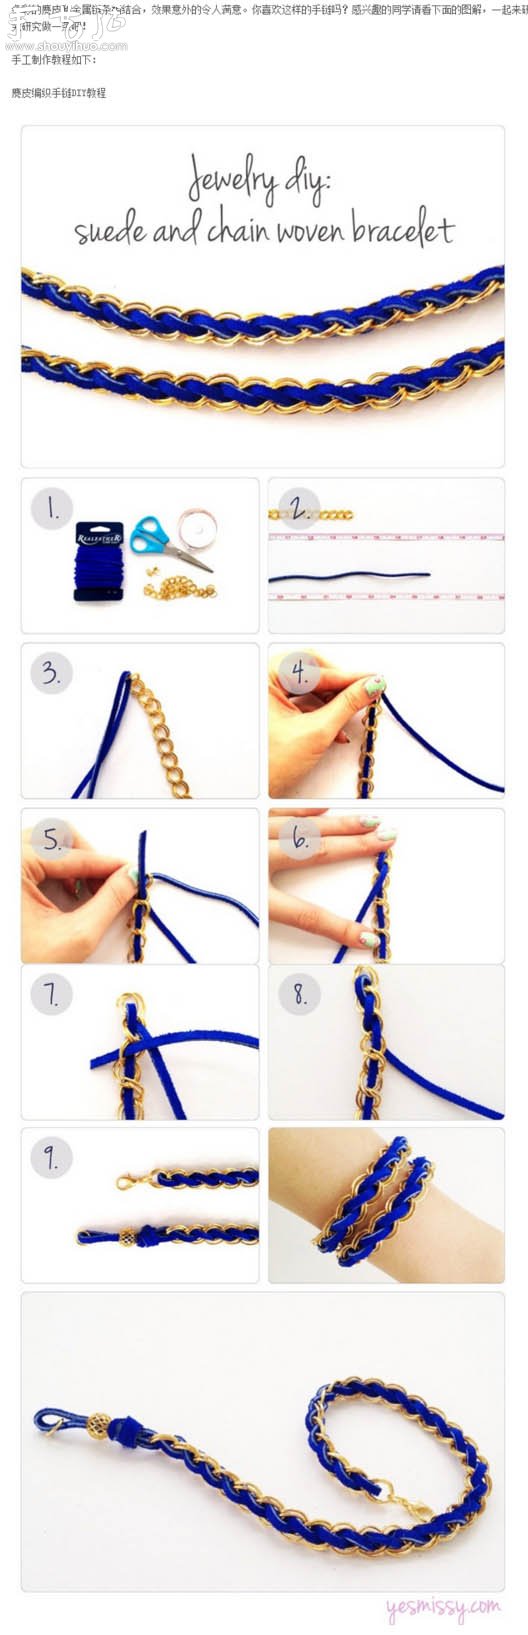 绳子和金属链编织漂亮手链的教程